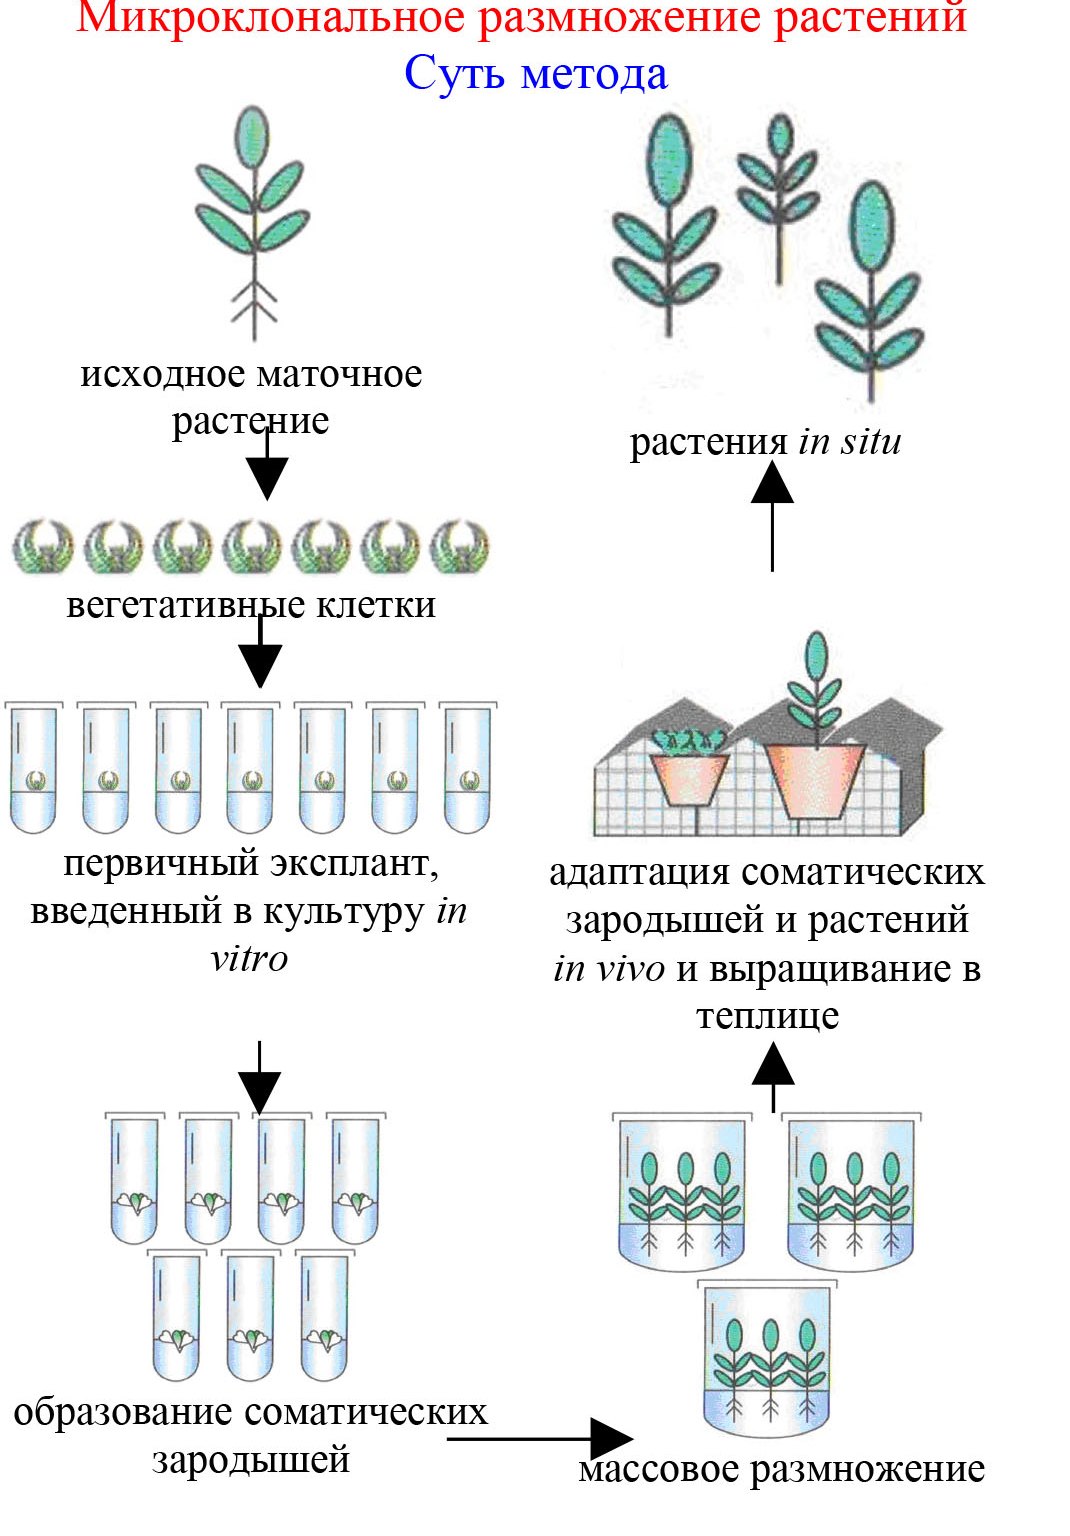 В чем заключается суть метода микроклонального размножения растений?